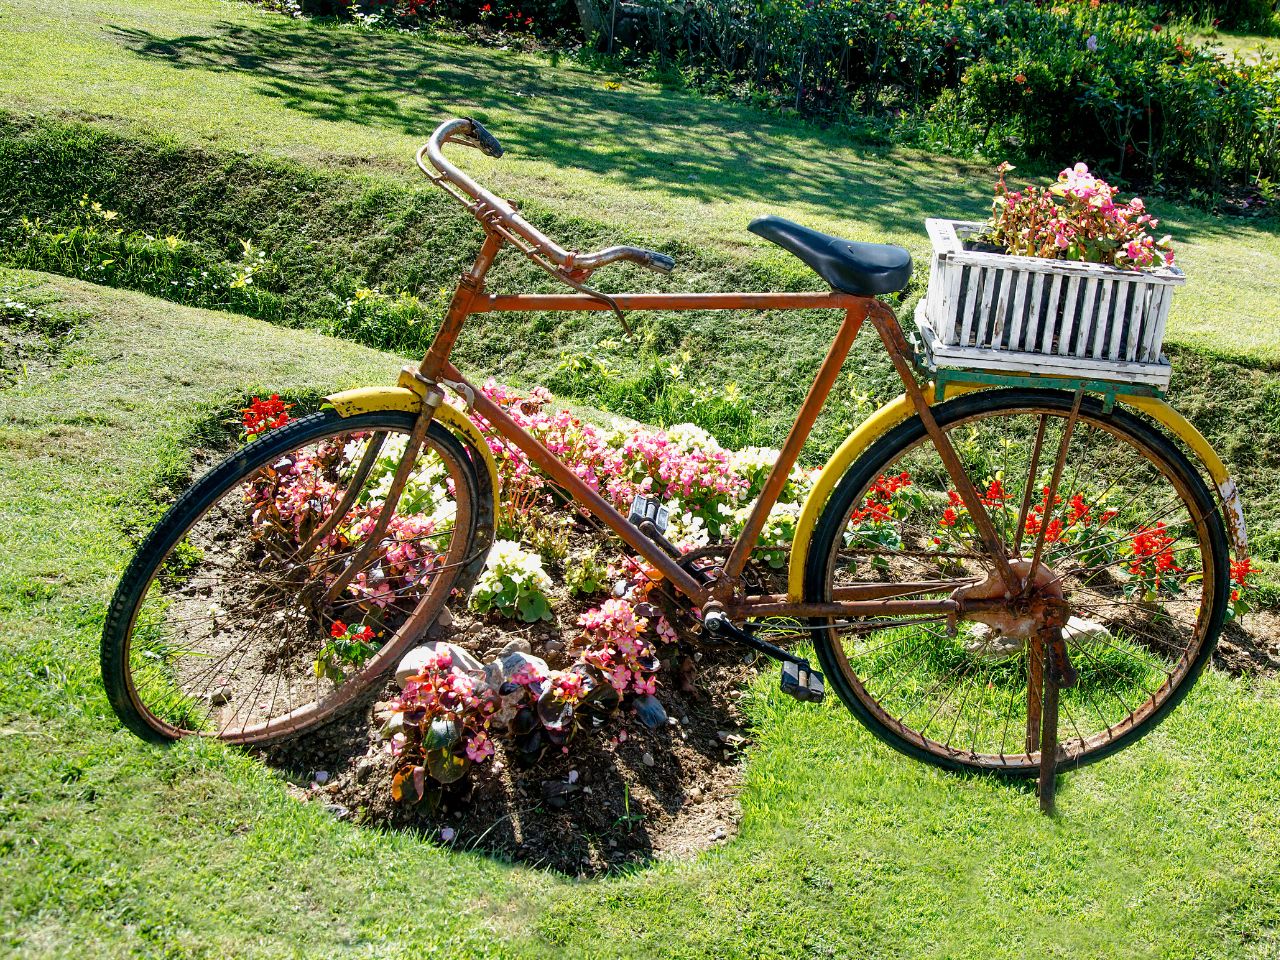 Aranżacja ogrodowa z rowerem jako kwietnikiem